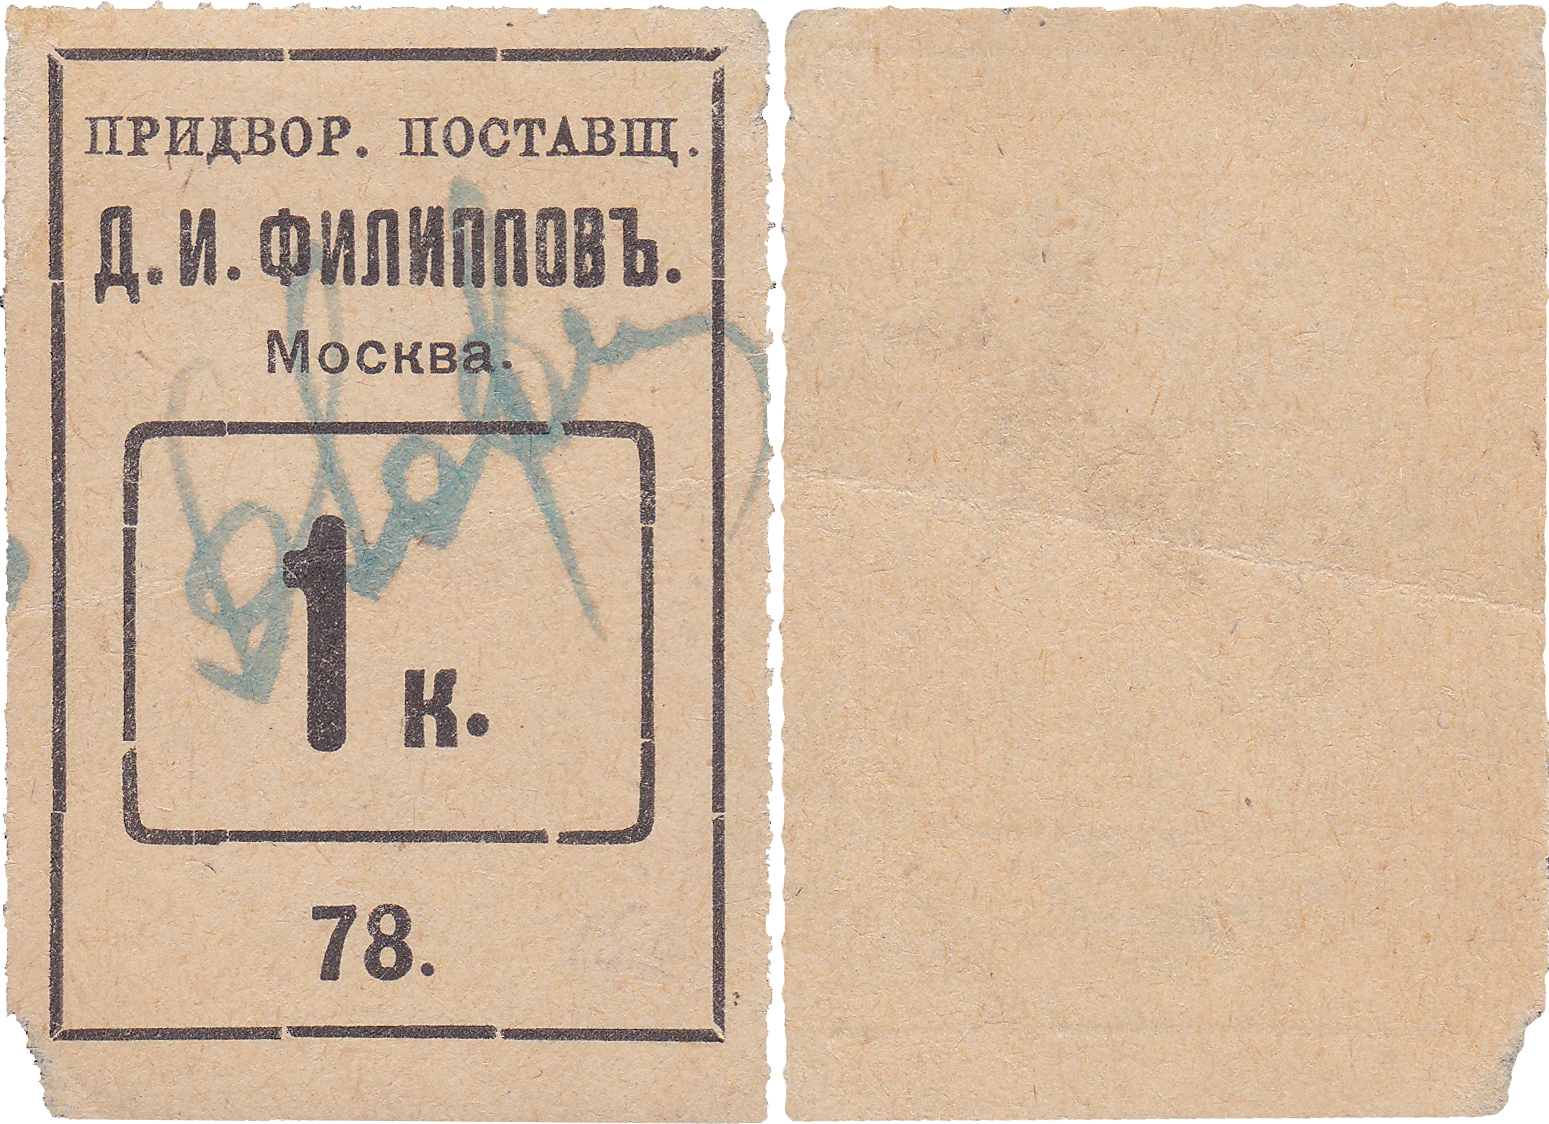 1 Копейка 1908 год. Придворный поставщик Д.И. Филиппов